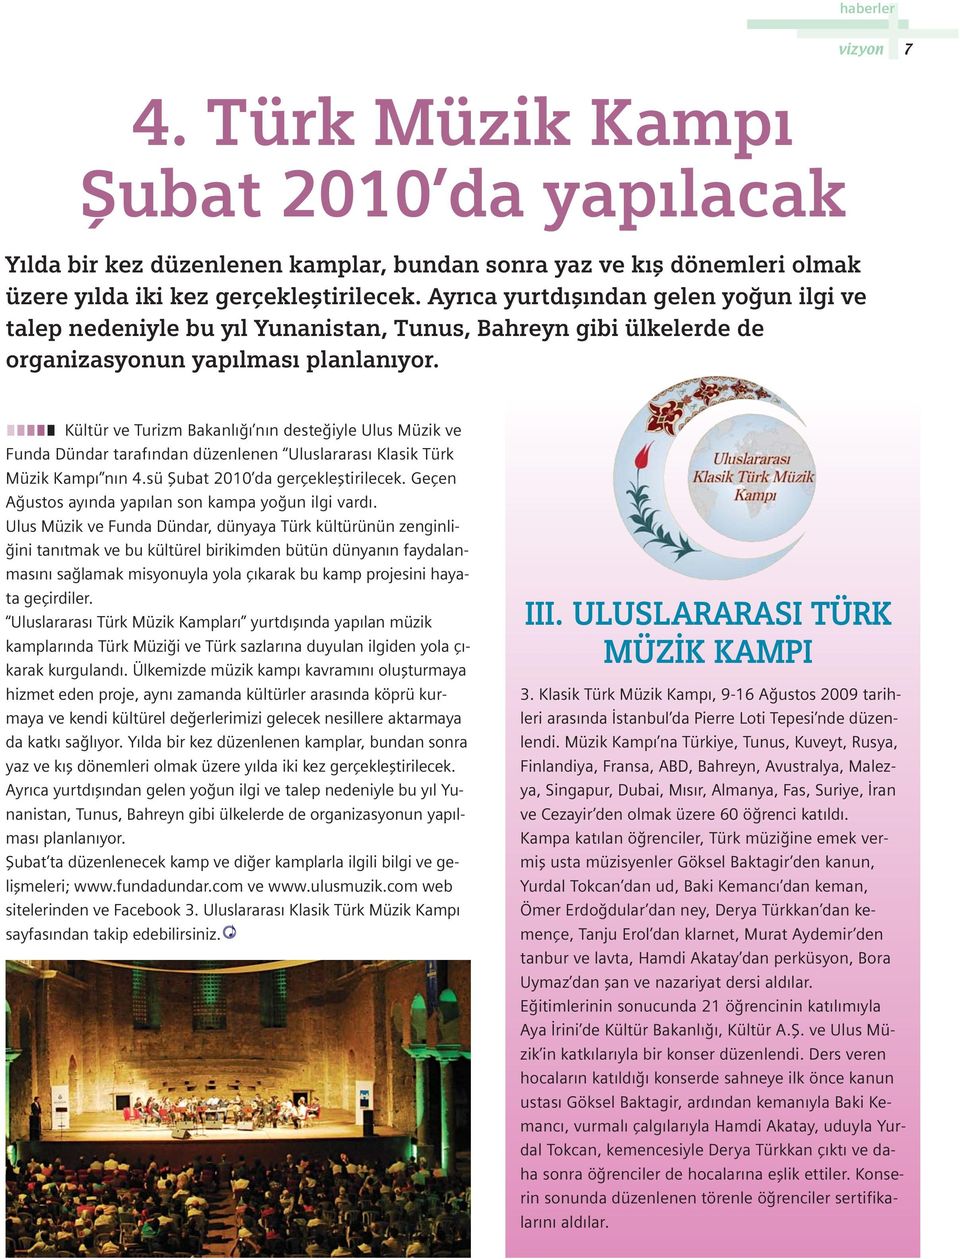 Kültür ve Turizm Bakanl n n deste iyle Ulus Müzik ve Funda Dündar taraf ndan düzenlenen Uluslararas Klasik Türk Müzik Kamp n n 4.sü fiubat 2010 da gerçeklefltirilecek.